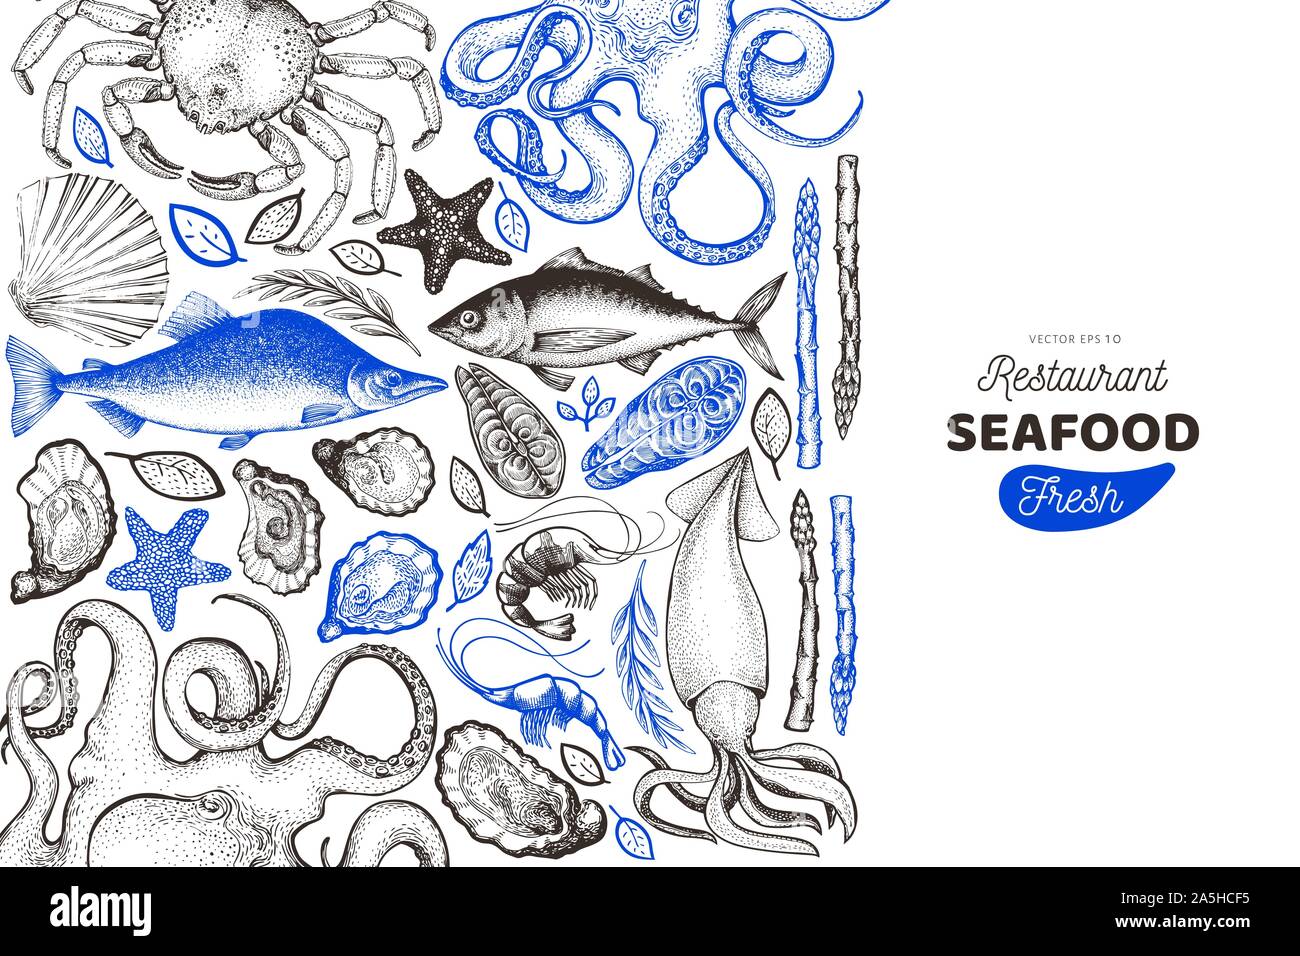 Modèle de conception de la mer et du poisson. Hand drawn vector illustration. Peut être utilisé pour la conception, l'emballage, des recettes menu, étiquette, le marché aux poissons, fruits de mer produit Illustration de Vecteur